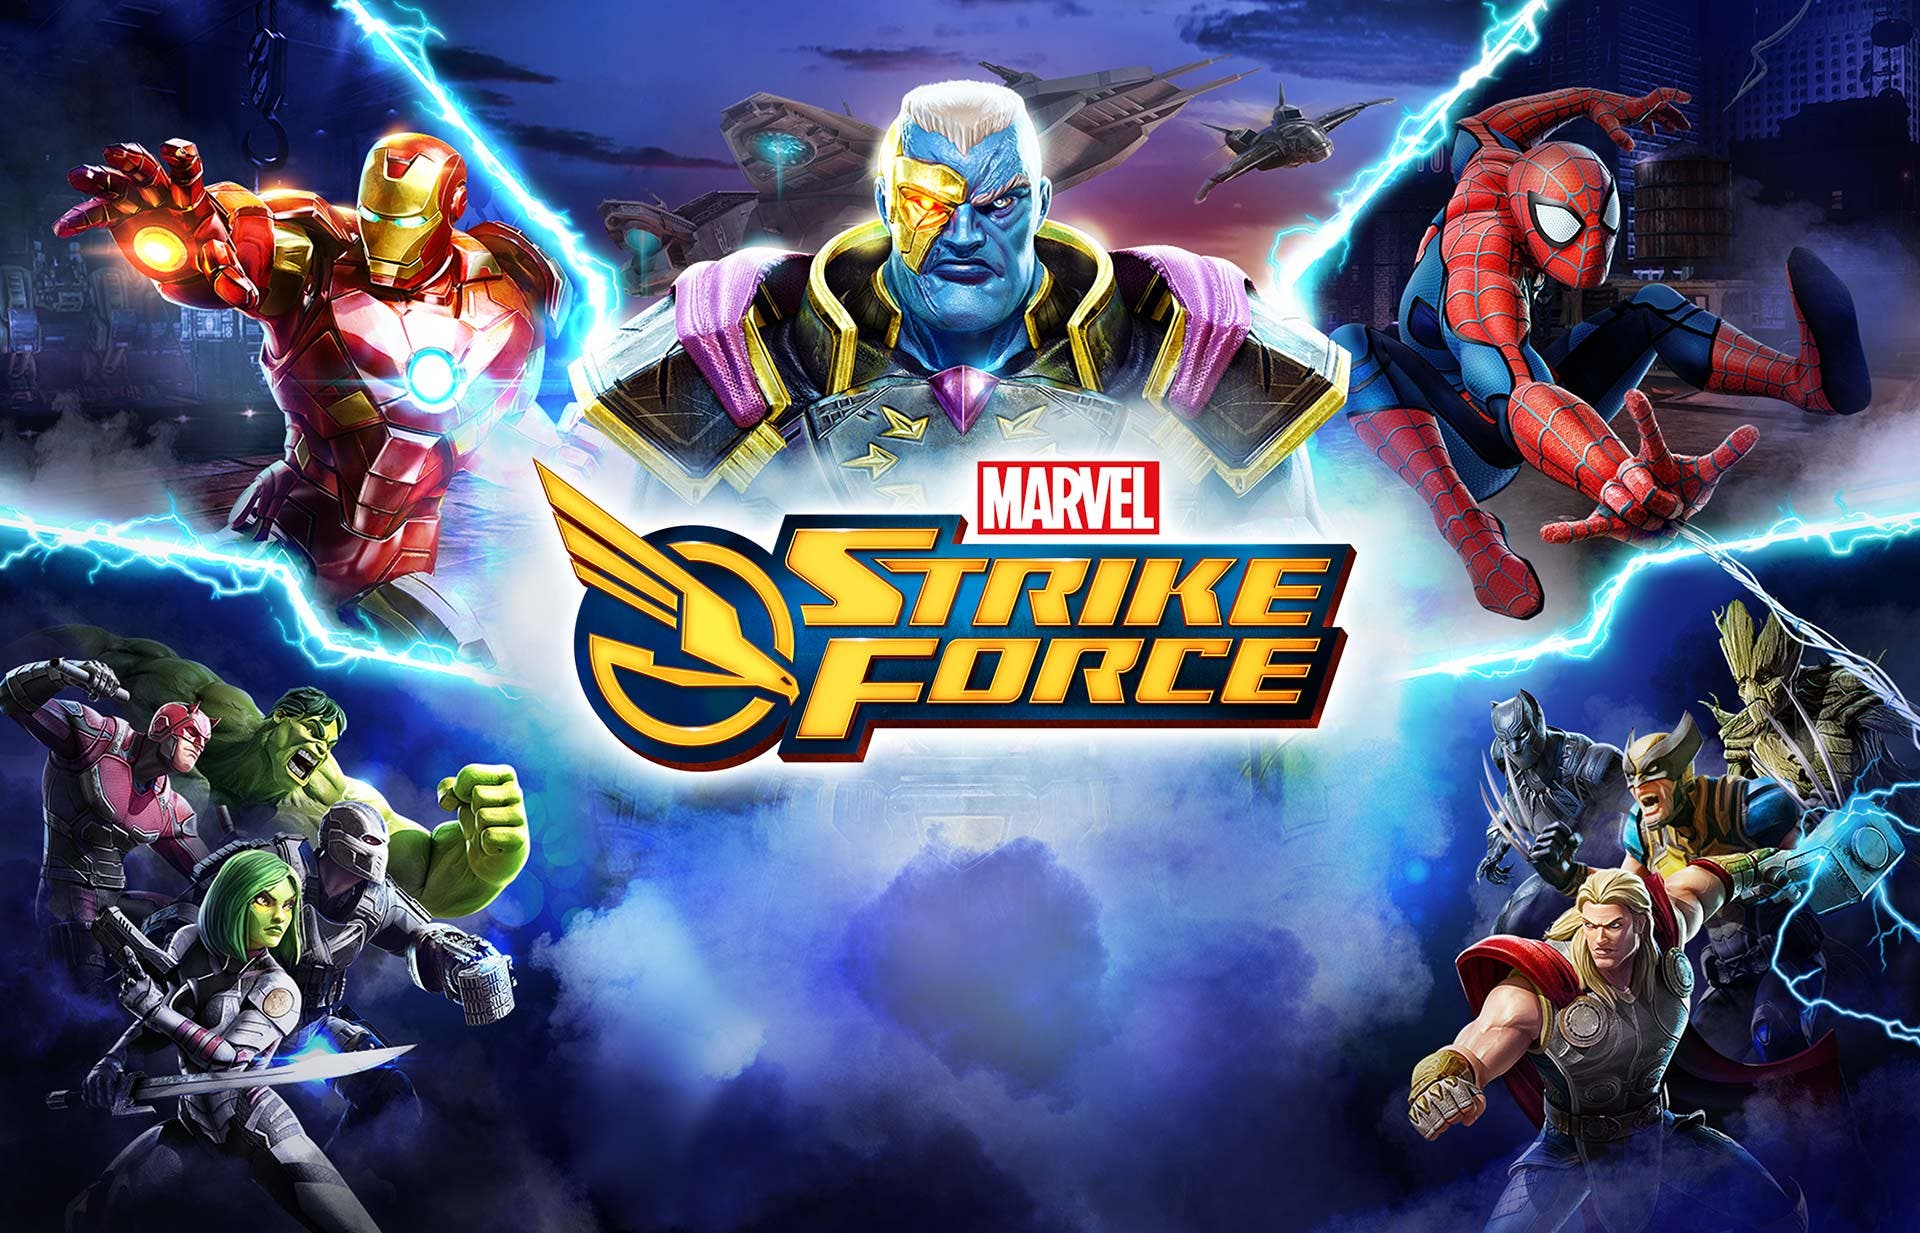 Imagen de Disney podría estar pensando en vender el estudio tras Marvel Strike Force